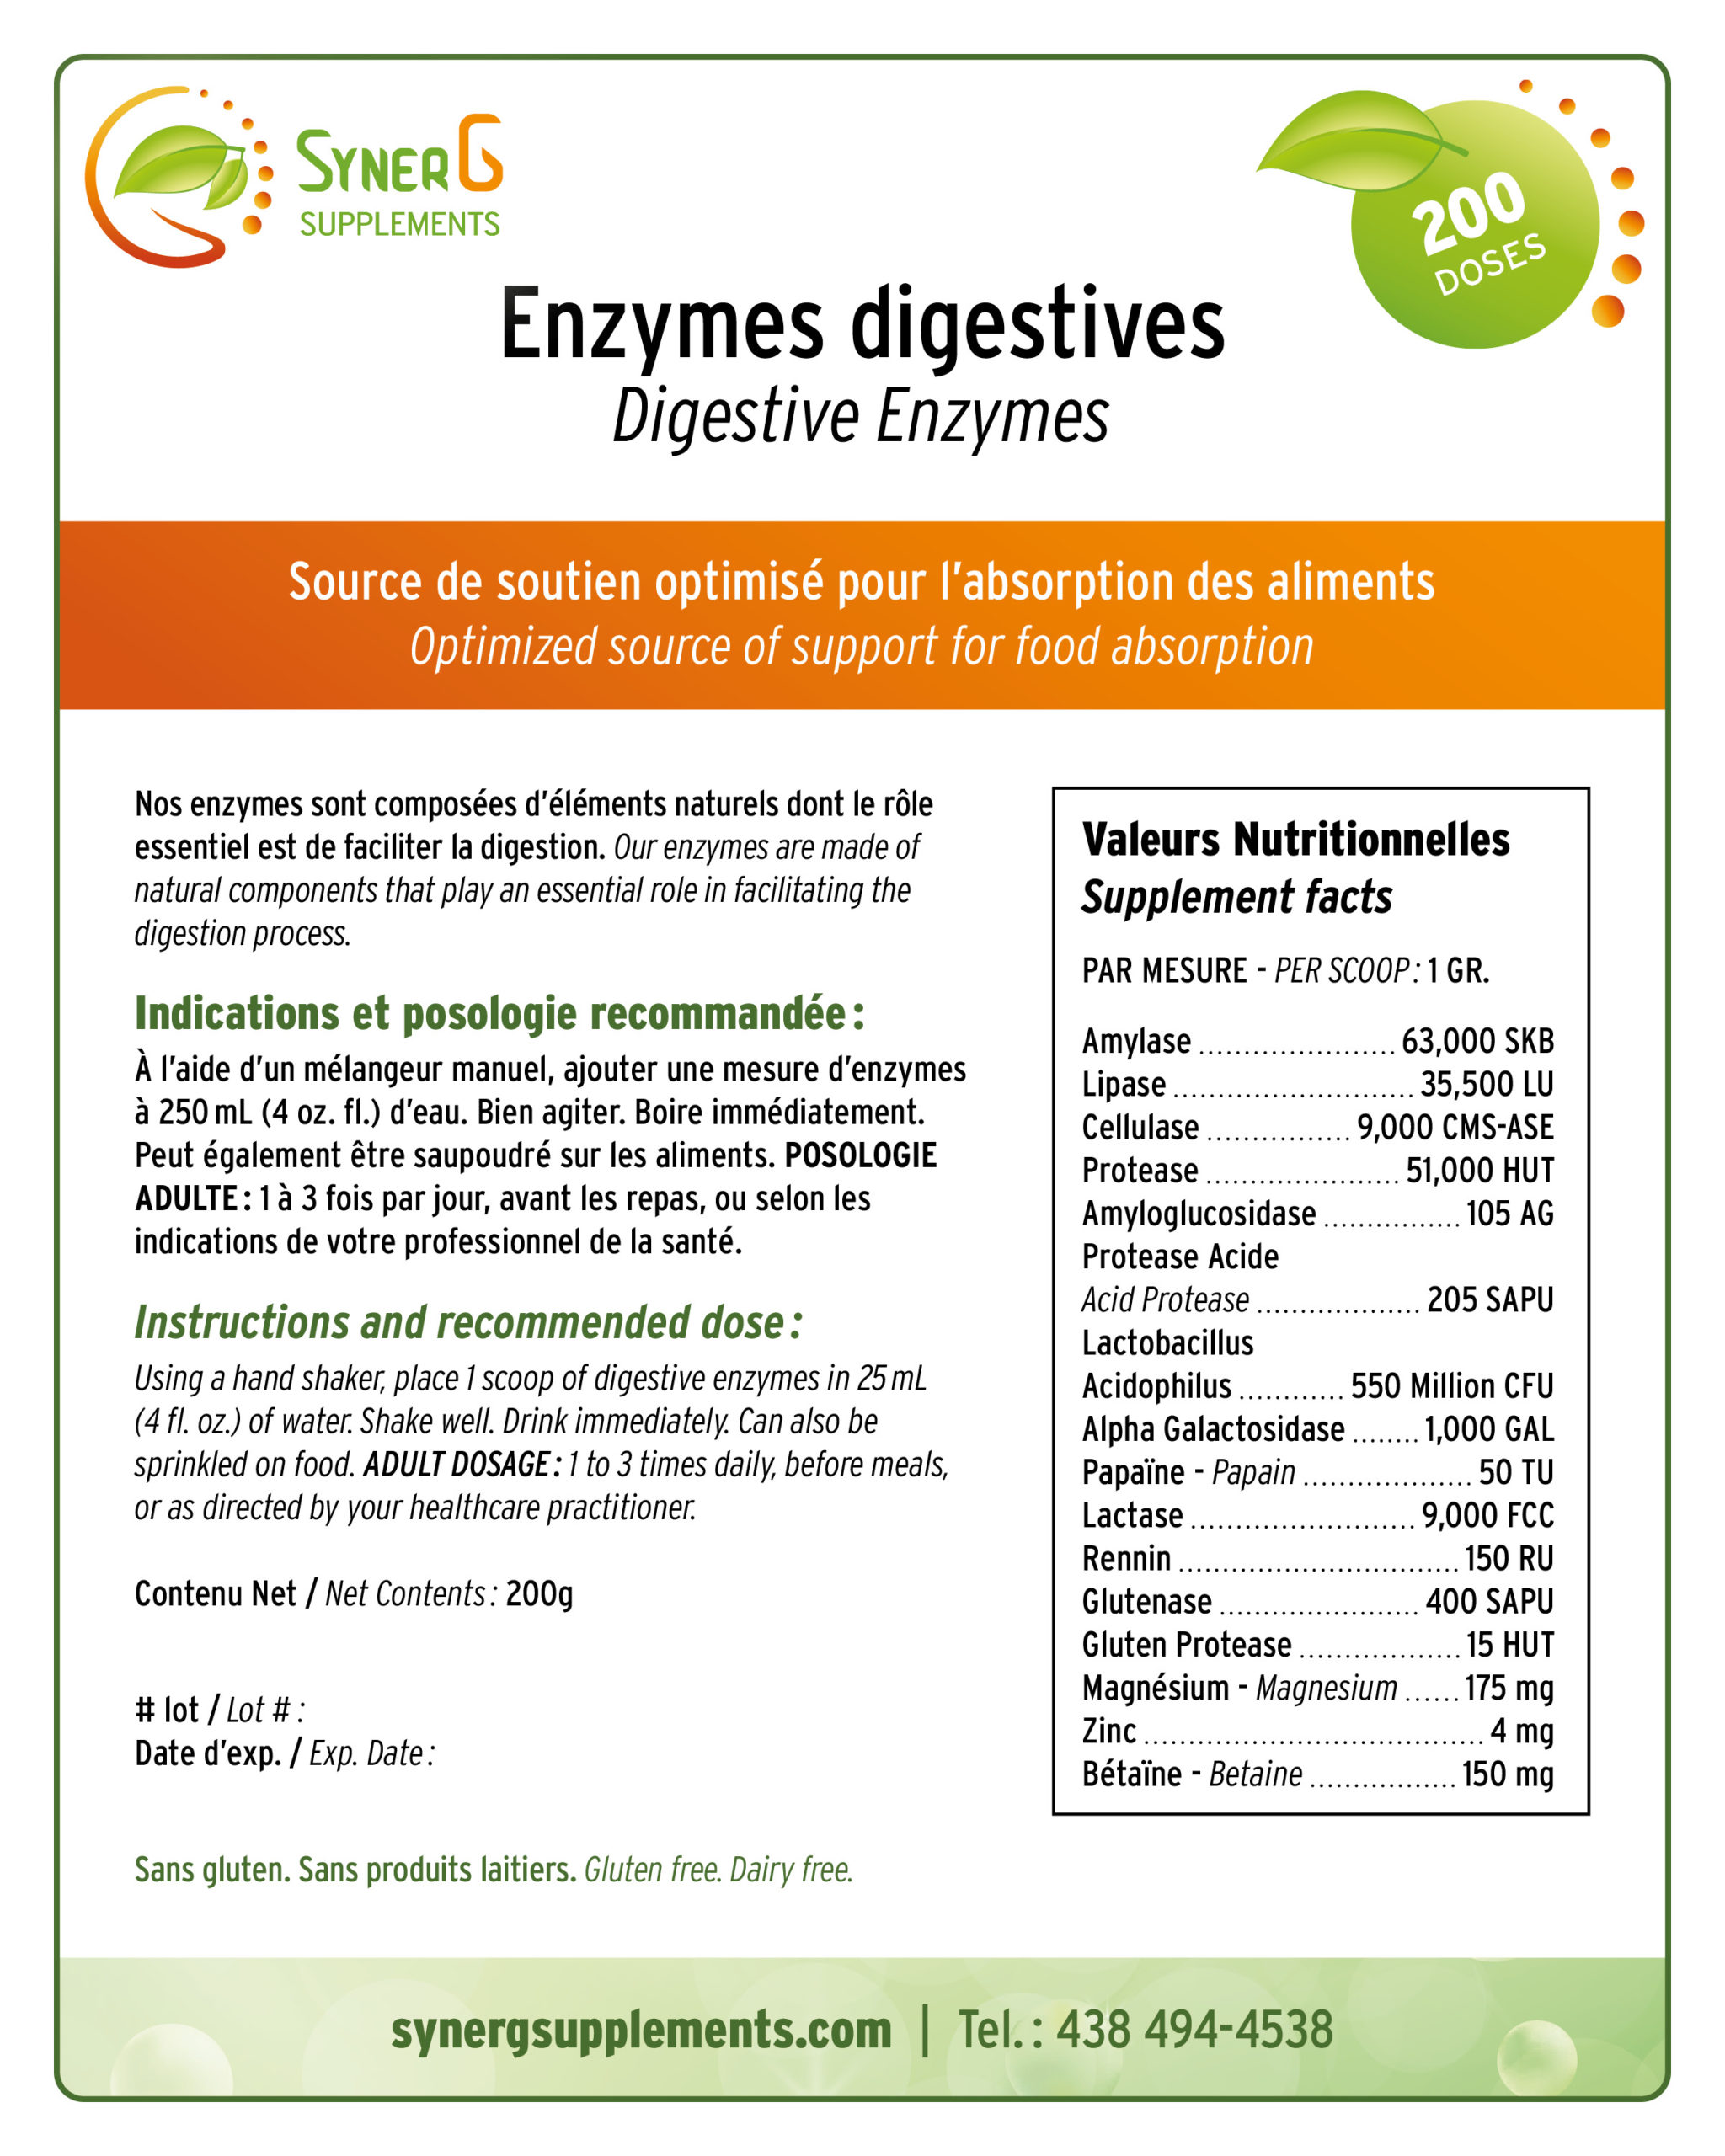 SG_EnzymesDigestives200g_4x5po_RVB